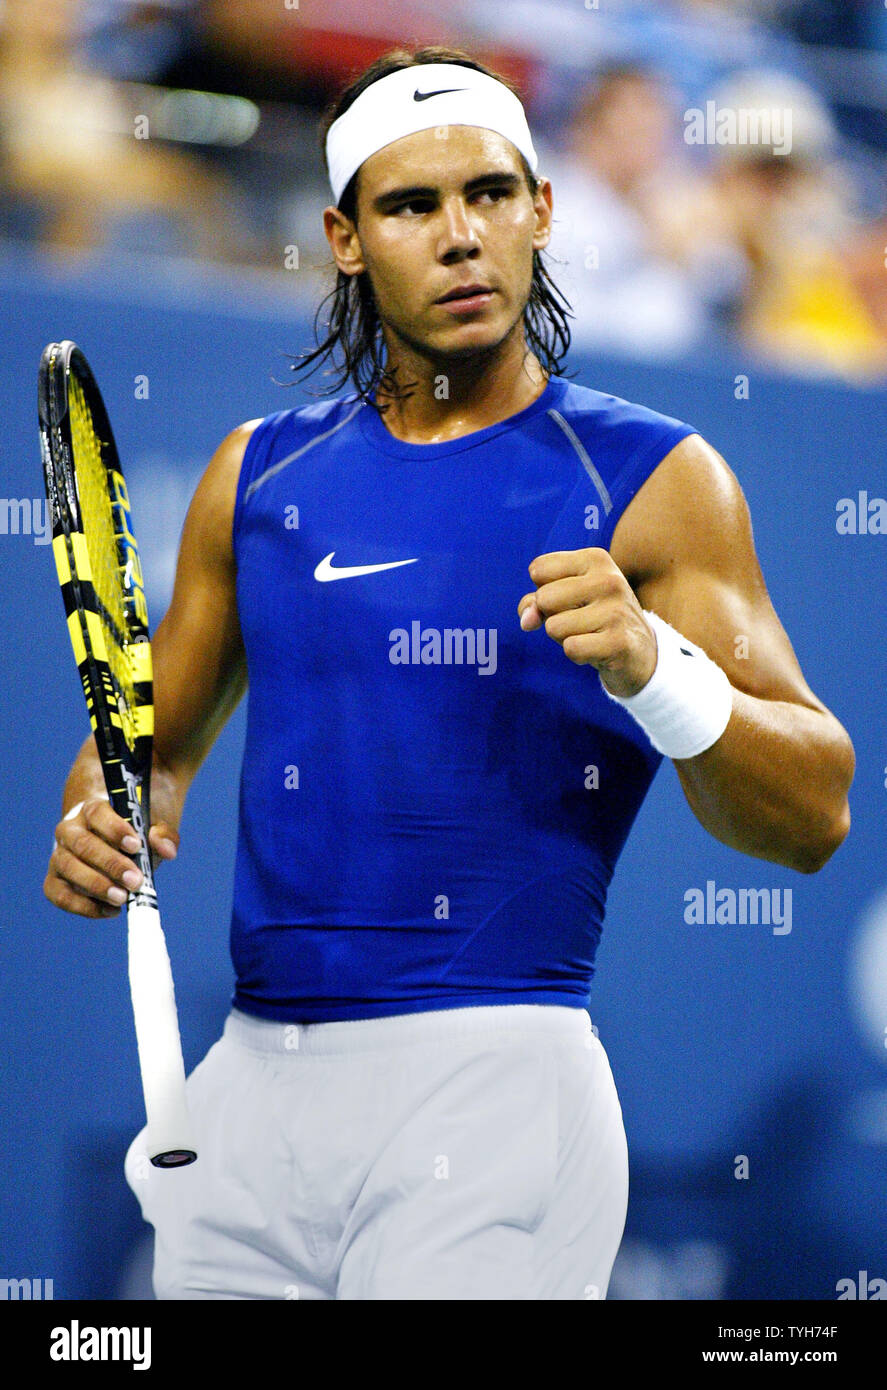 Rafael Nadal de l'Espagne, qui est classé deuxième, réagit comme il marque un point au large de Scoville Jenkins (USA) au cours de la première série de leur match à l'US Open le 31 août 2005 à New York. (Photo d'UPI/Monika Graff) Banque D'Images